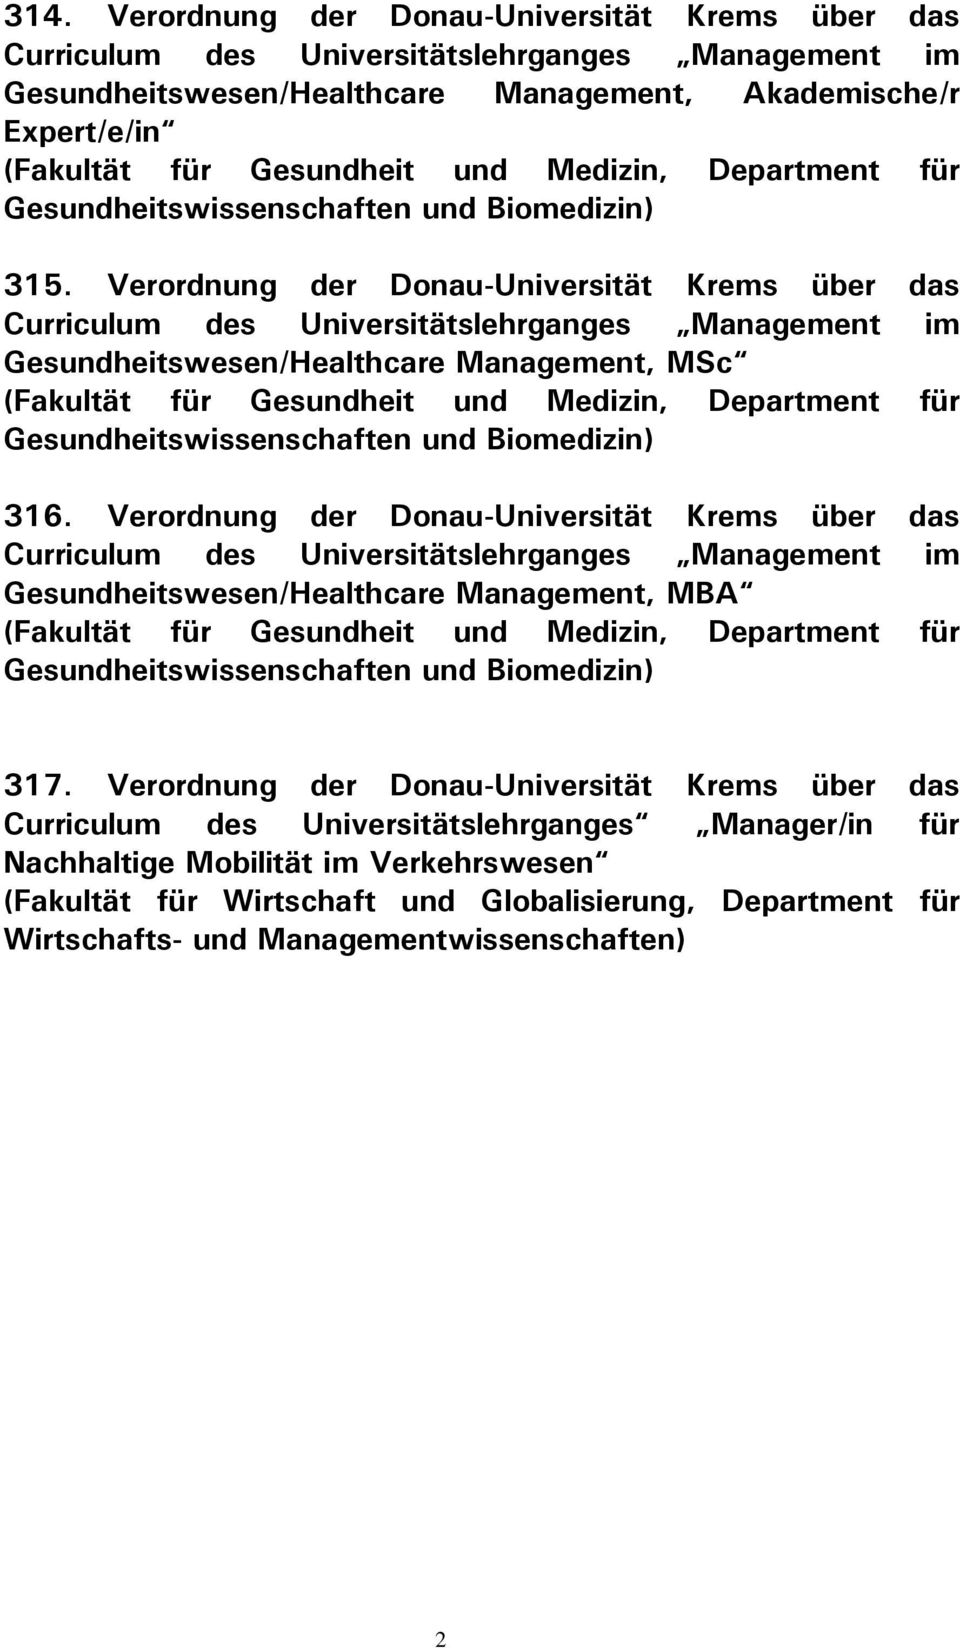 Verordnung der Donau-Universität Krems über das Curriculum des Universitätslehrganges Management im Gesundheitswesen/Healthcare Management, MSc (Fakultät für Gesundheit und Medizin, Department für